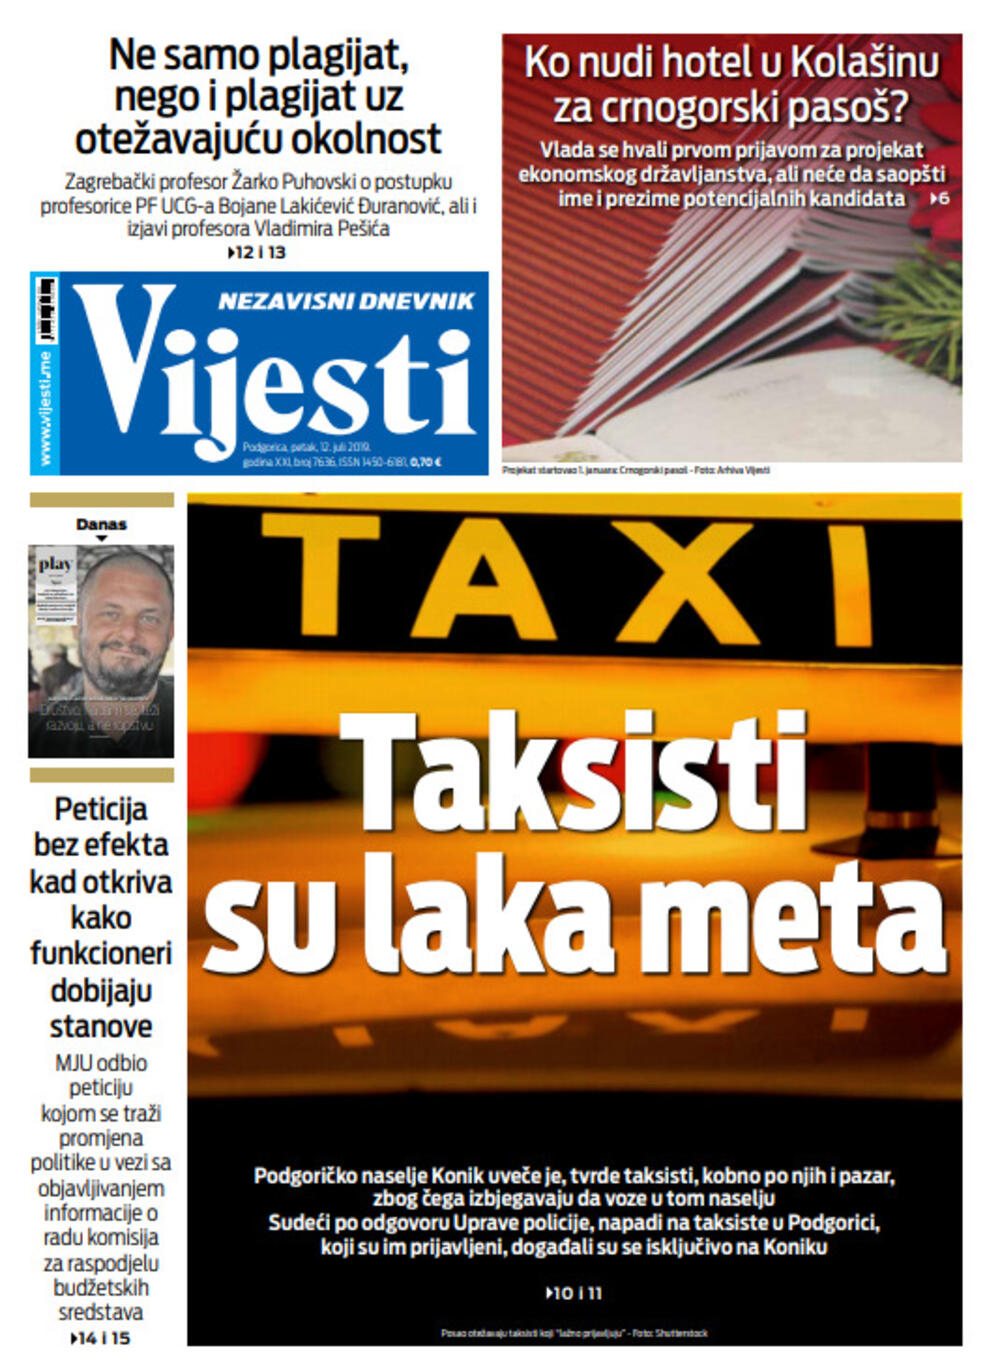 Naslovna strana "Vijesti" za 12. jul, Foto: Vijesti